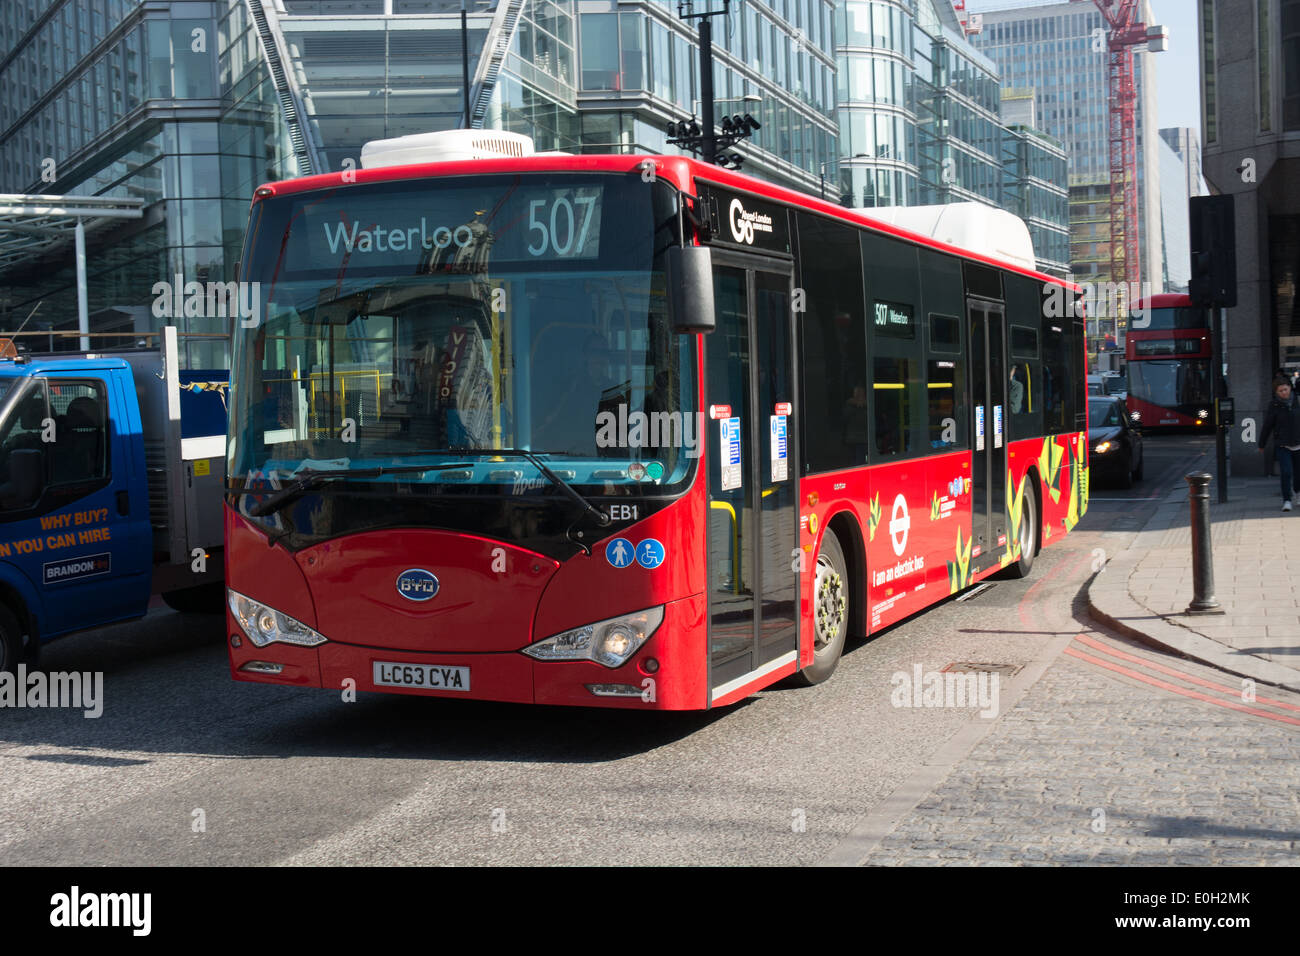 London ist Erprobung batteriebetriebene Busse. BYD (Build Your Dreams), China hat zwei, die auf zwei Routen verwendet werden geliefert Stockfoto